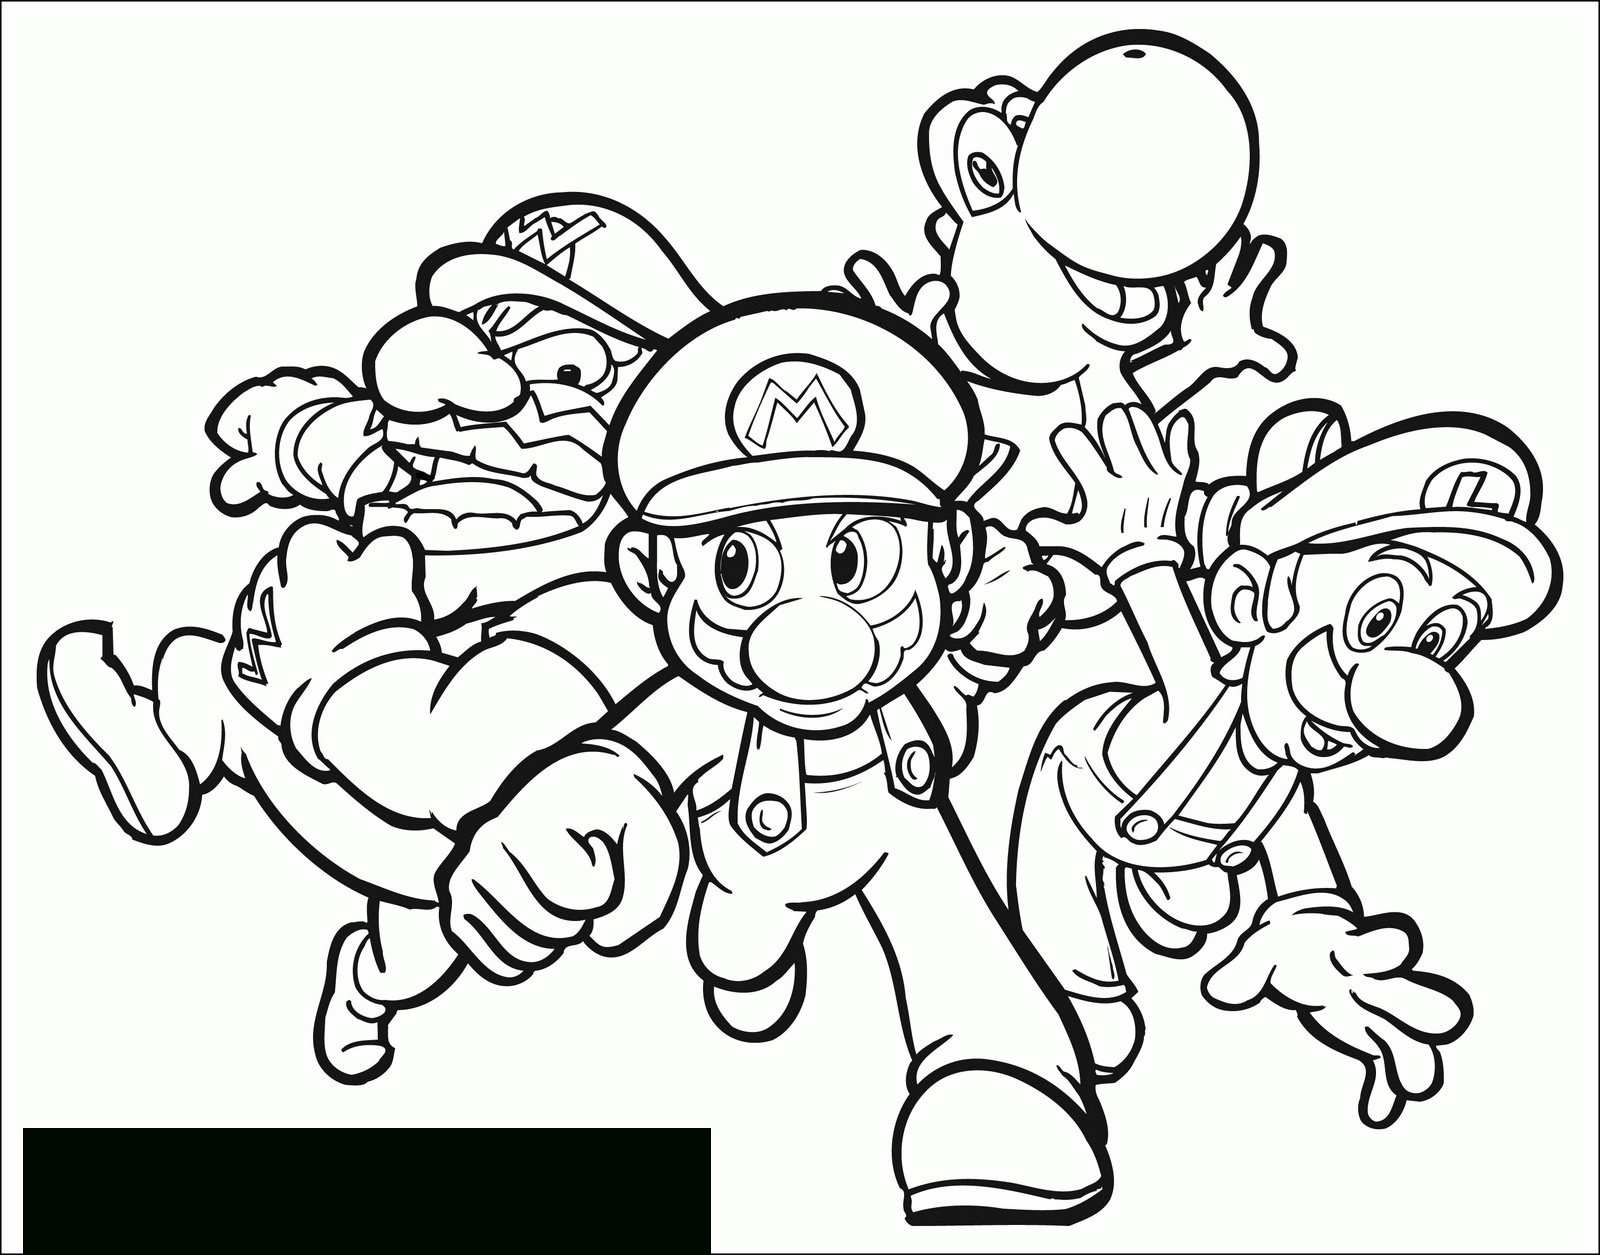 Mario Bros #87 (Jeux Vidéos) – Coloriages À Imprimer dedans Jeux Gratuit De Dessin A Colorier 